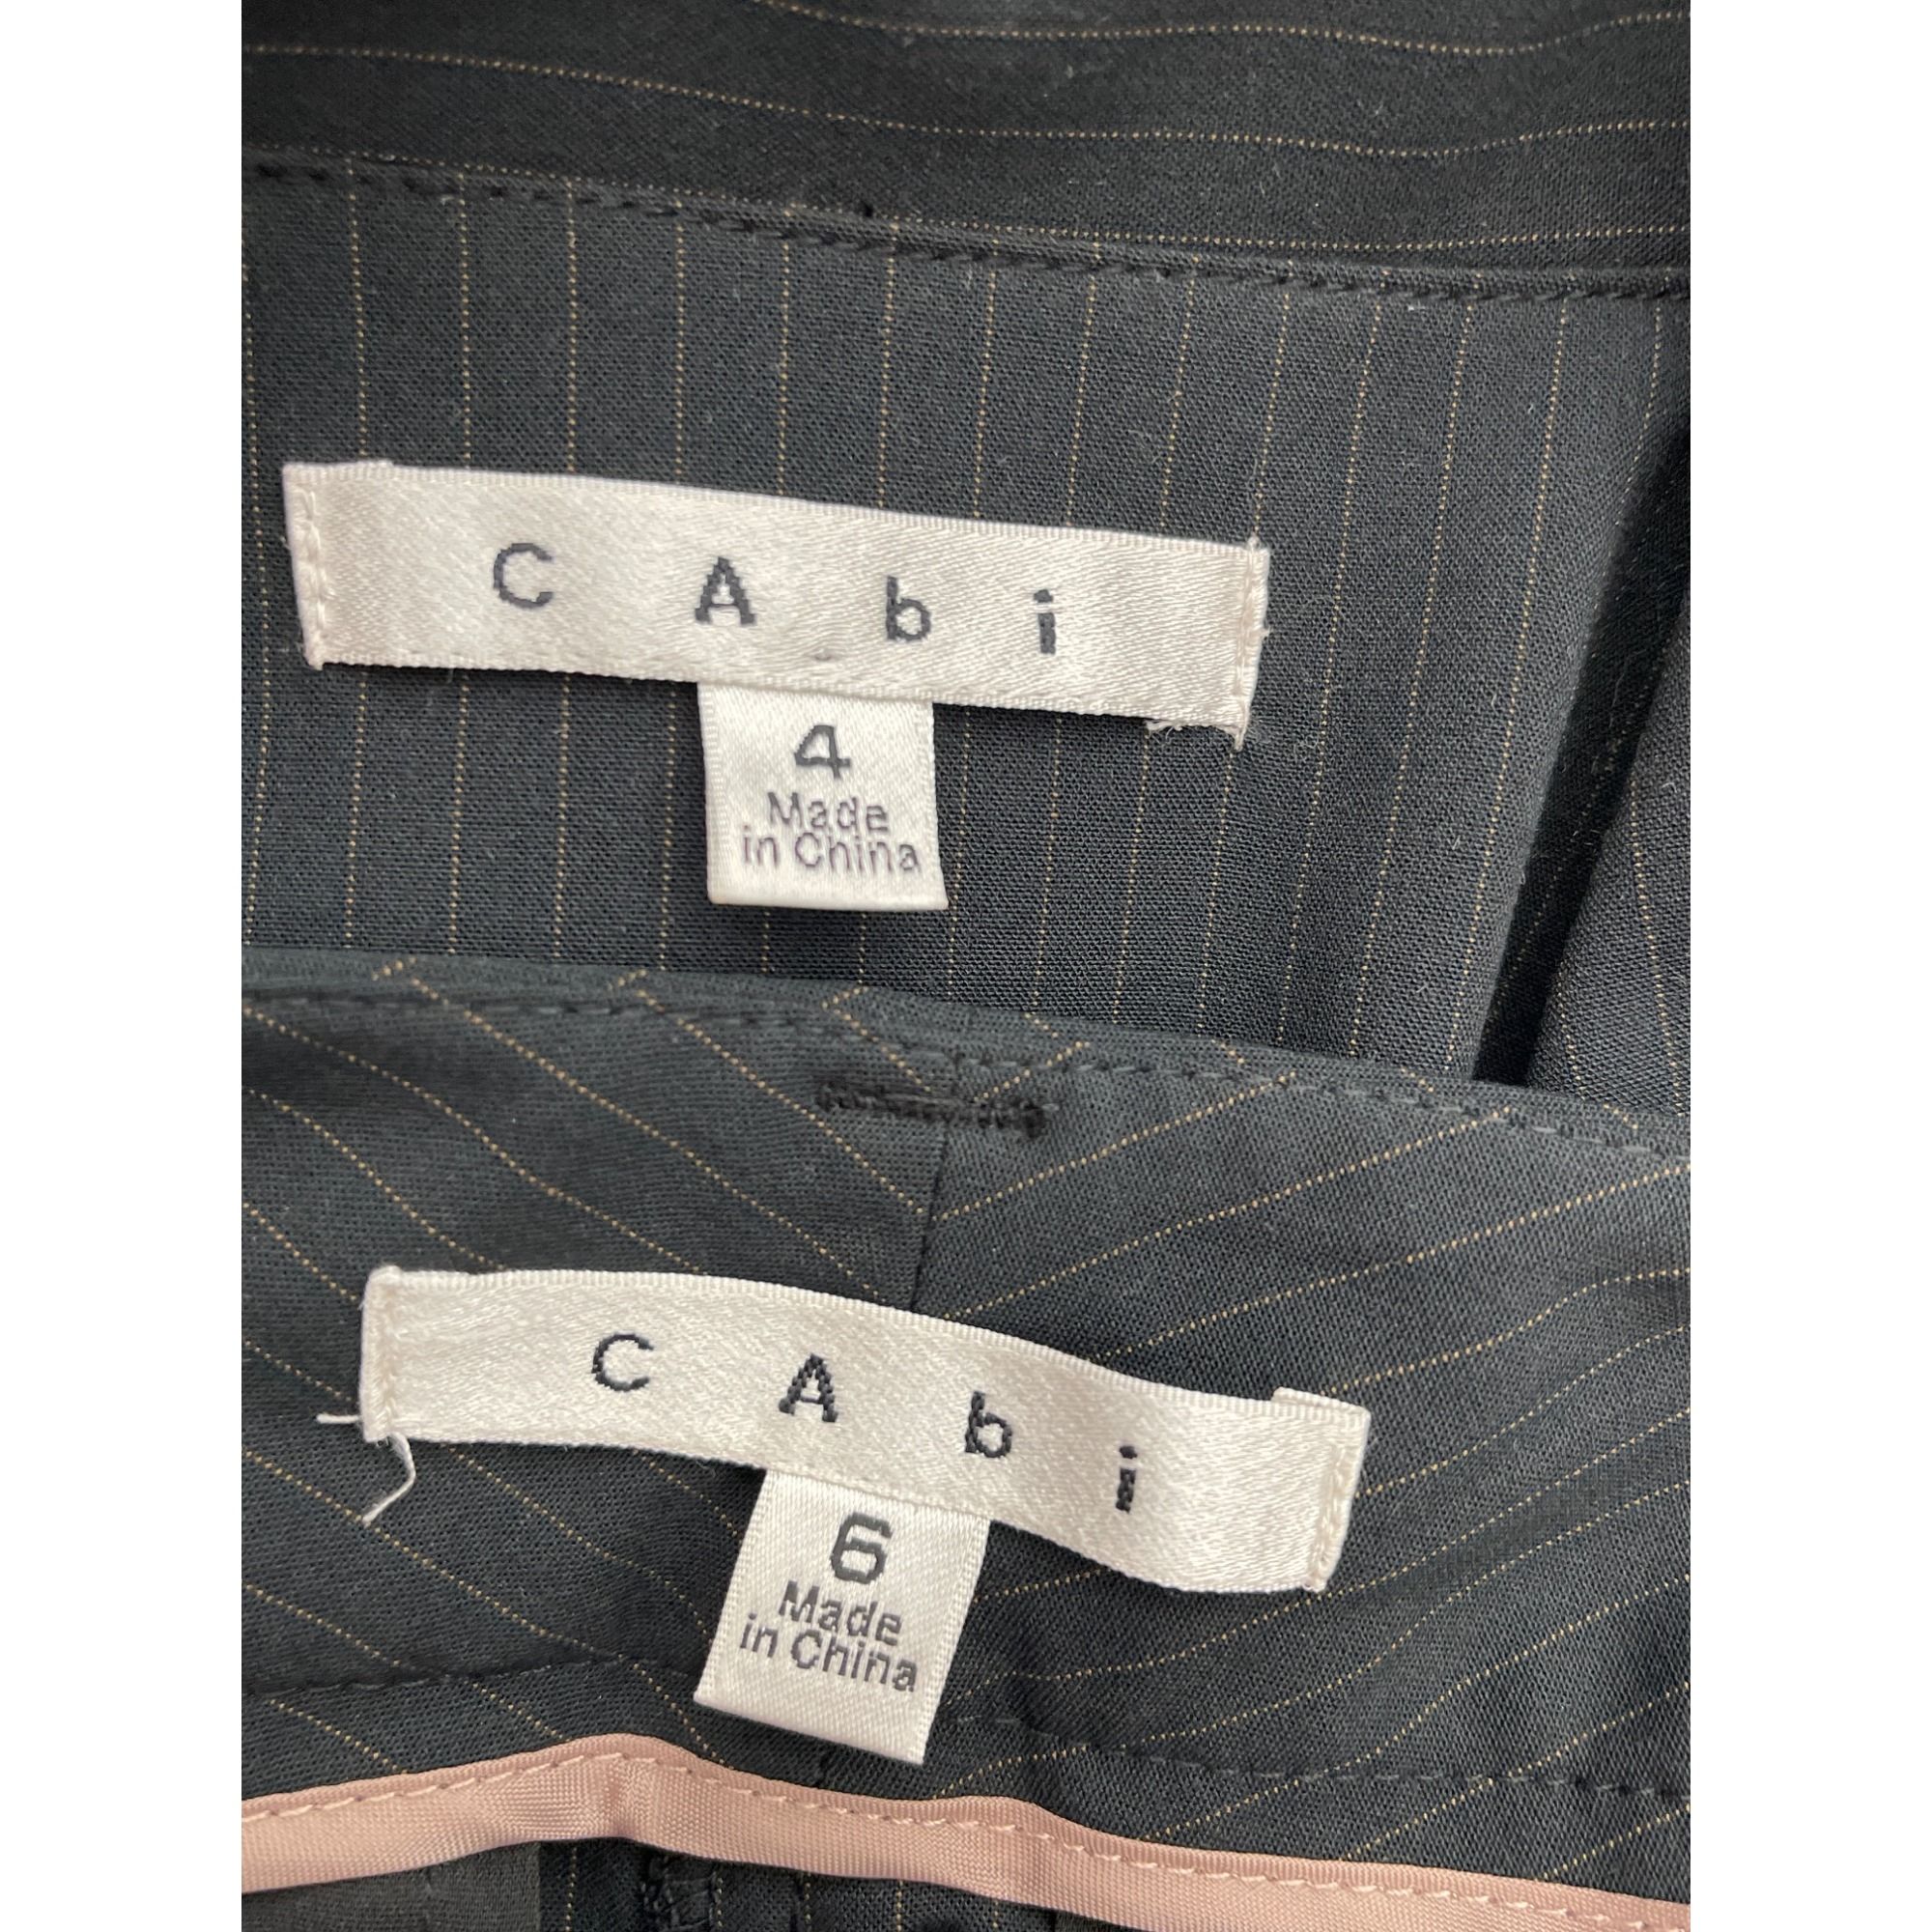 Other Cabi Black Pin Striped Pant 2 Pcs Suit Set Jacket 4 Pant 6 Size S / US 4 / IT 40 - 12 Thumbnail